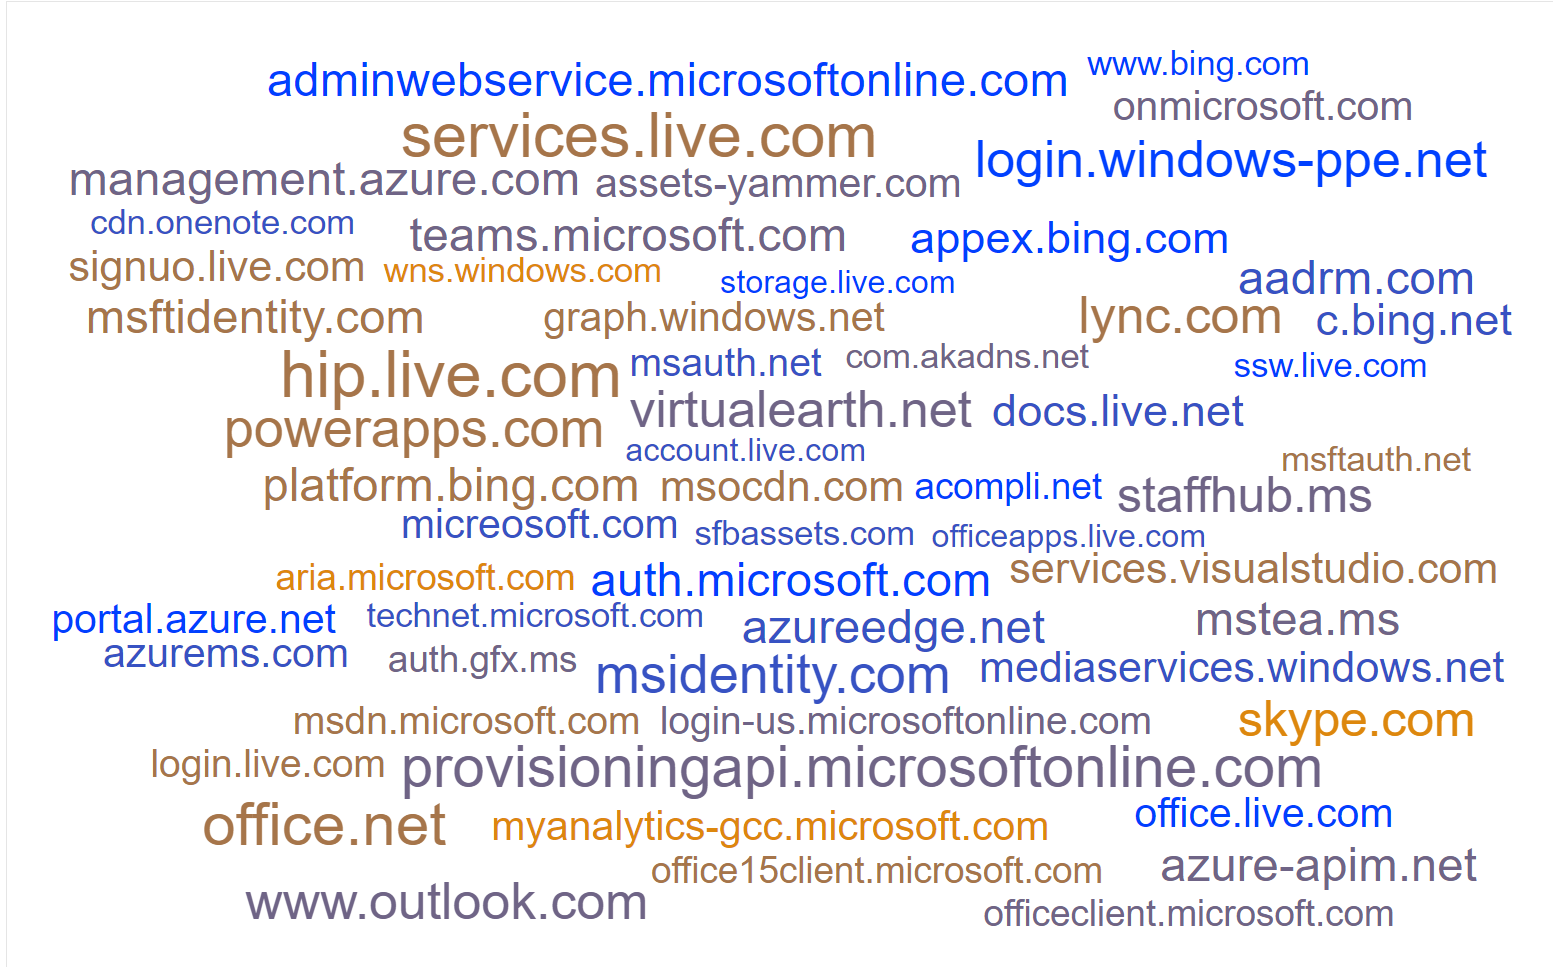 A disturbing cloud of URLs